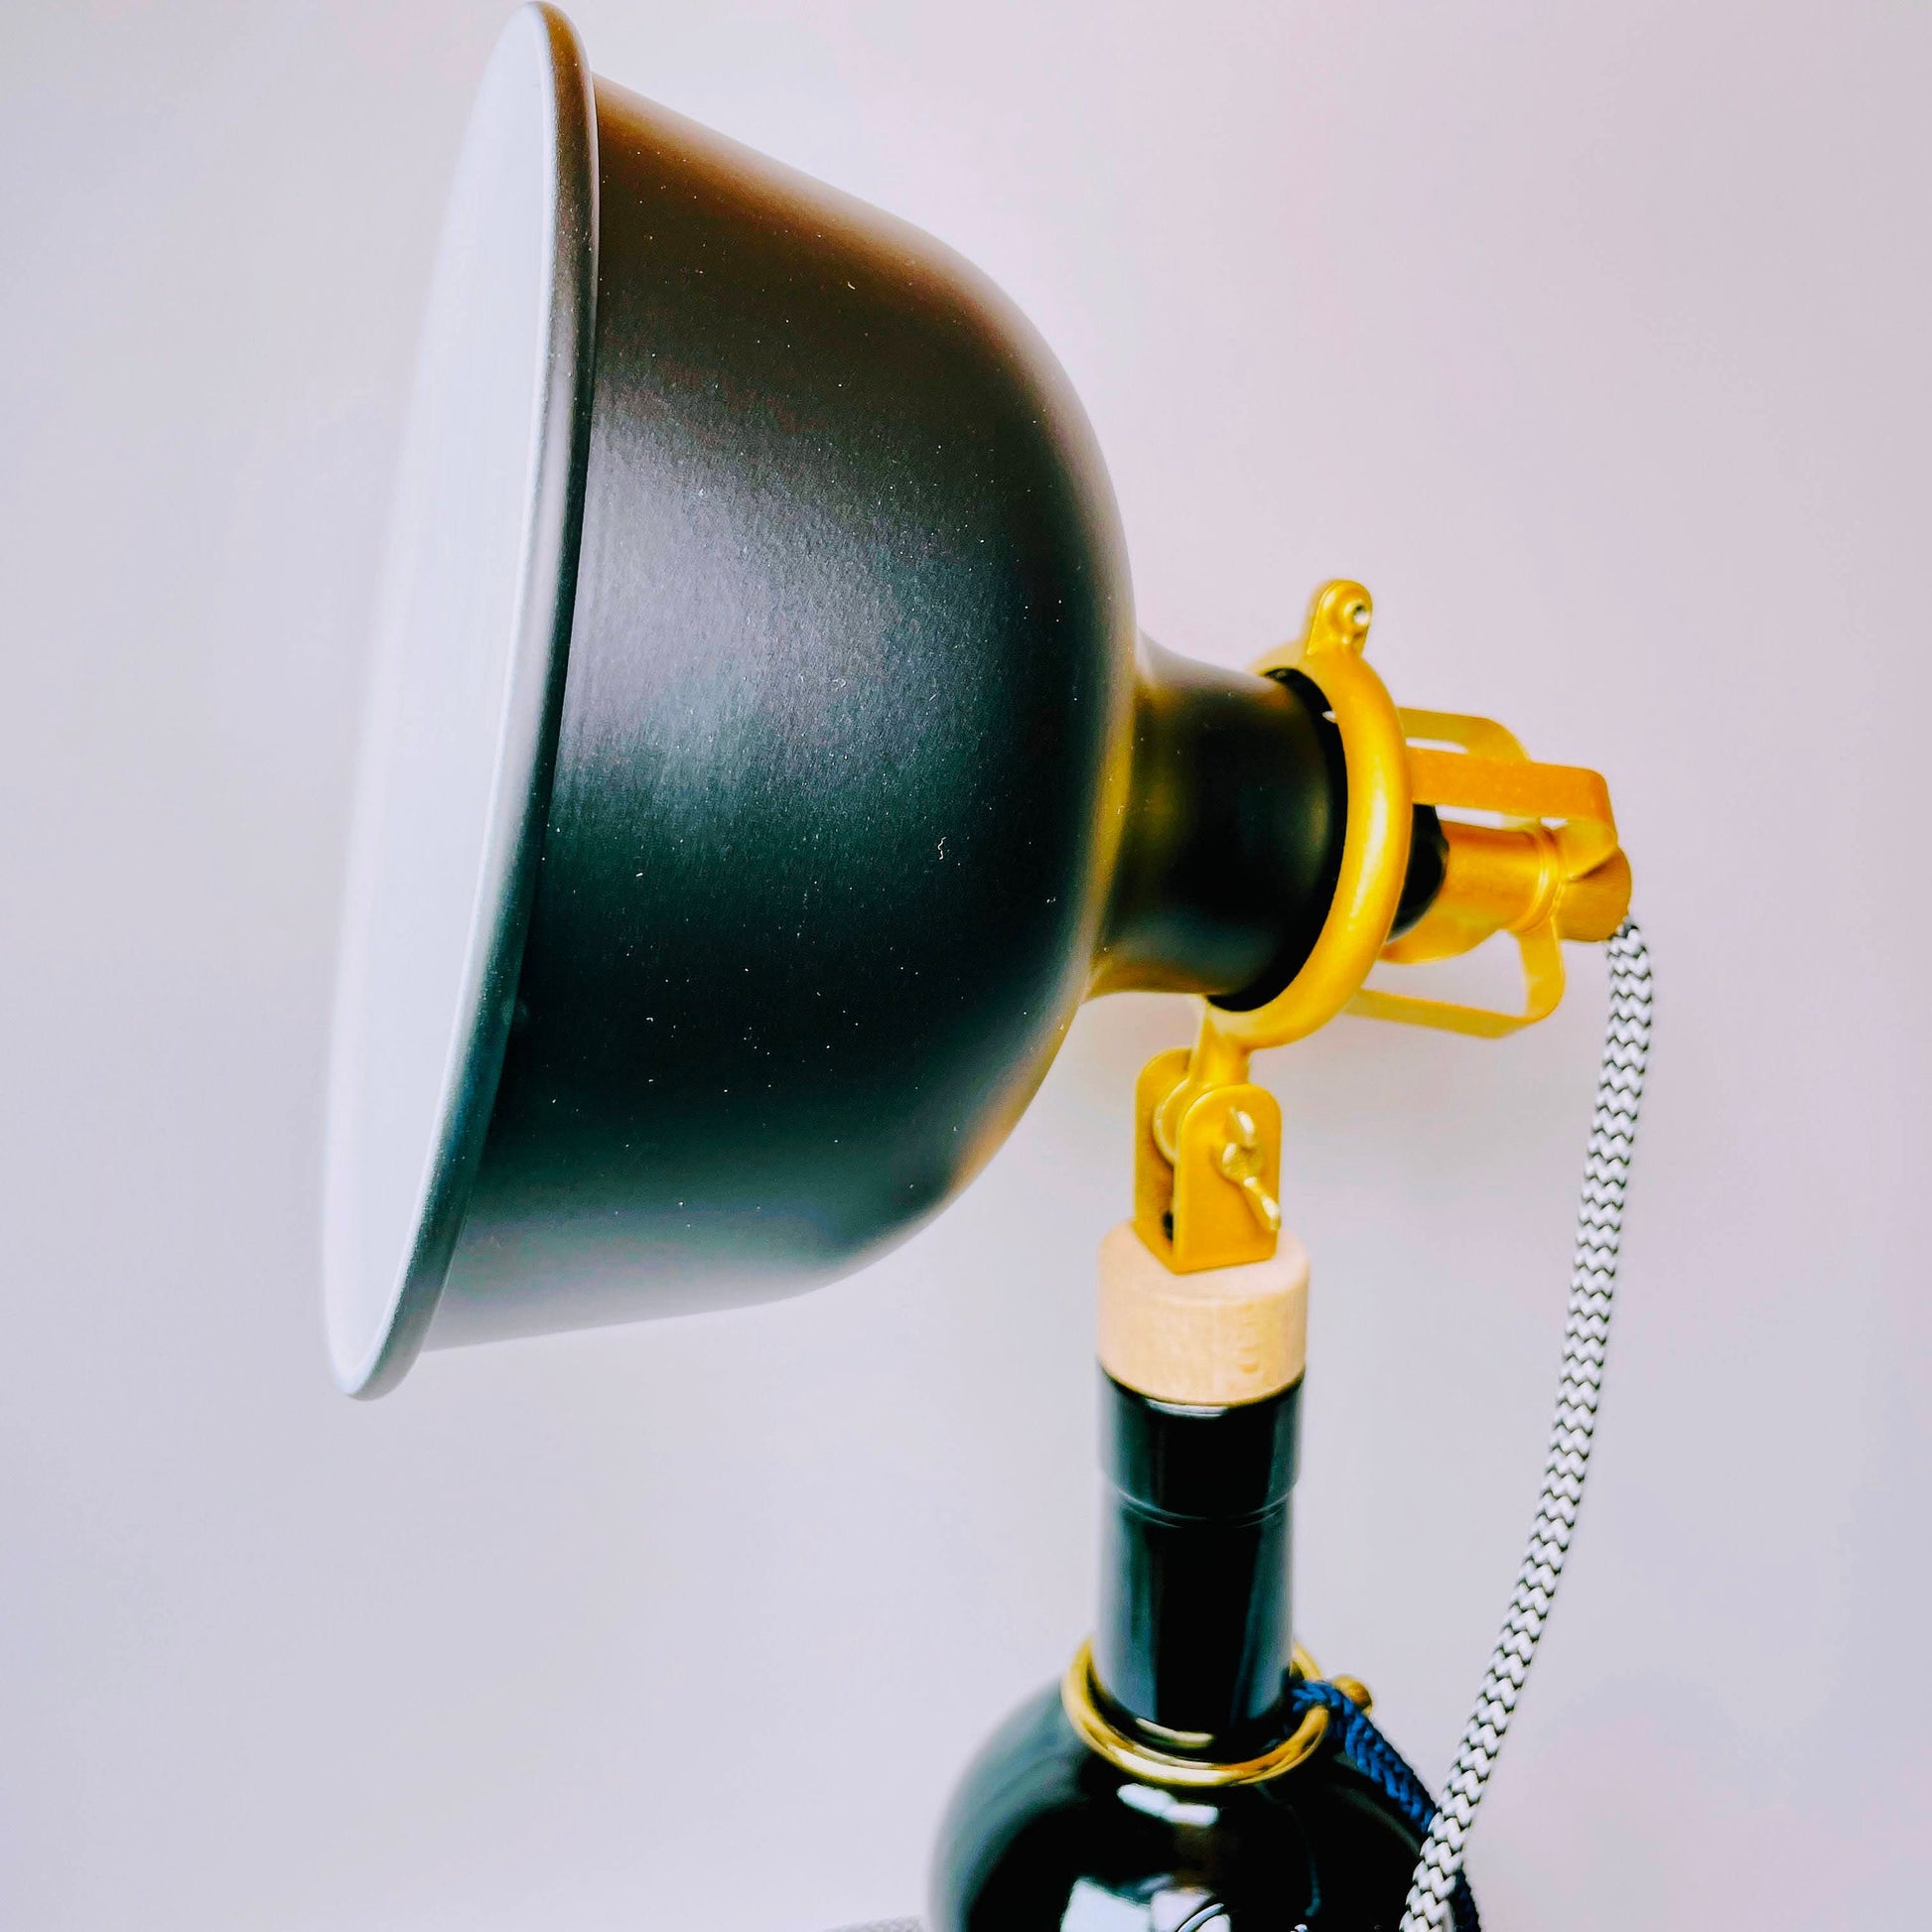 Windspiel Gin Vintage-Lampe | Handgemachte nachhaltige Tischlampe aus Windspiel Gin | Einzigartige Geschenkidee | Deko-Licht | Upcycling